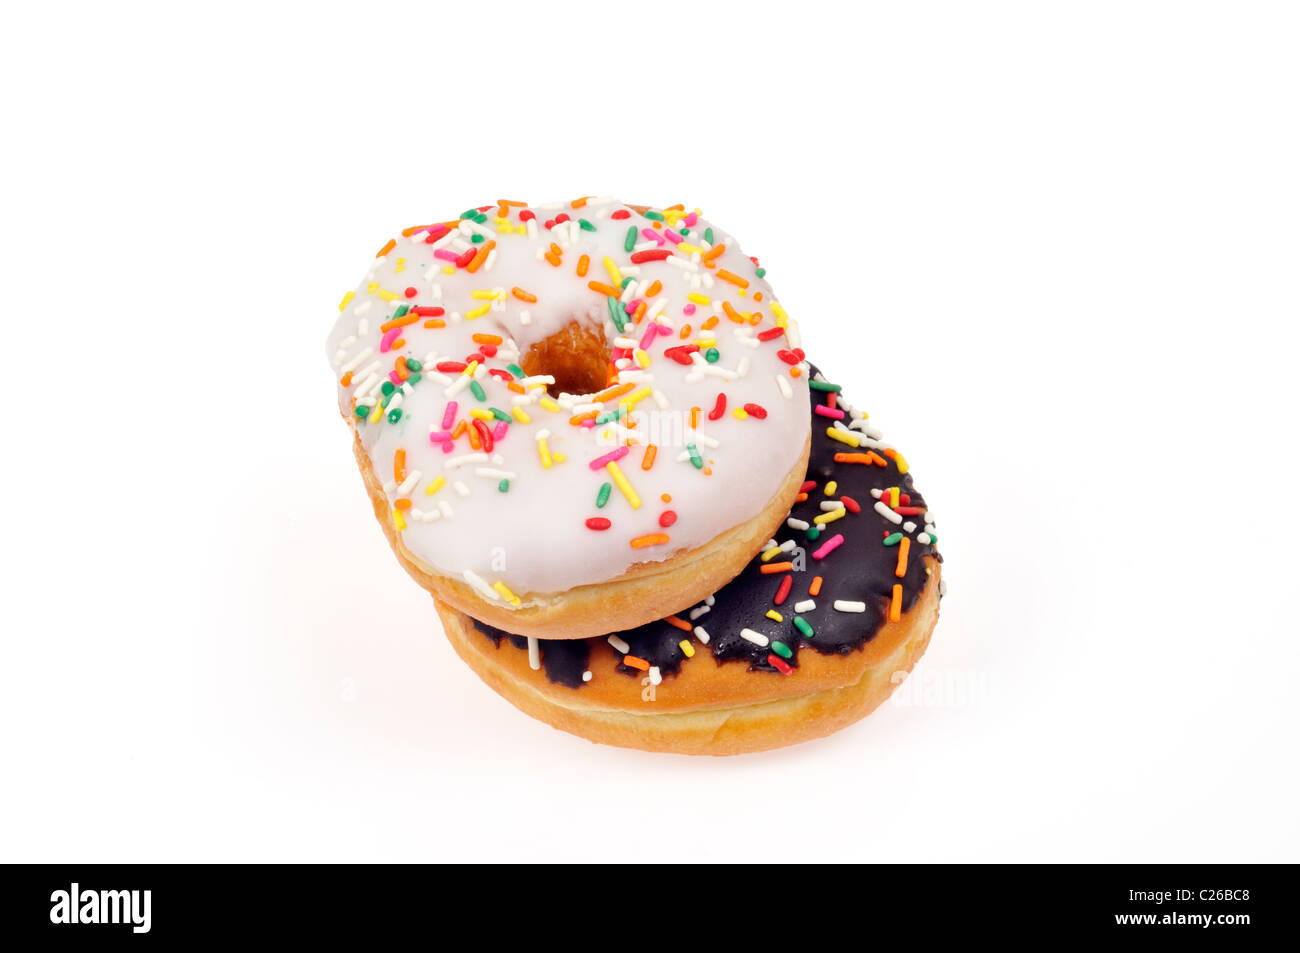 Esmerilado de vainilla y chocolate donut donut esmerilado con coloridos rocía sobre fondo blanco, corte. Foto de stock